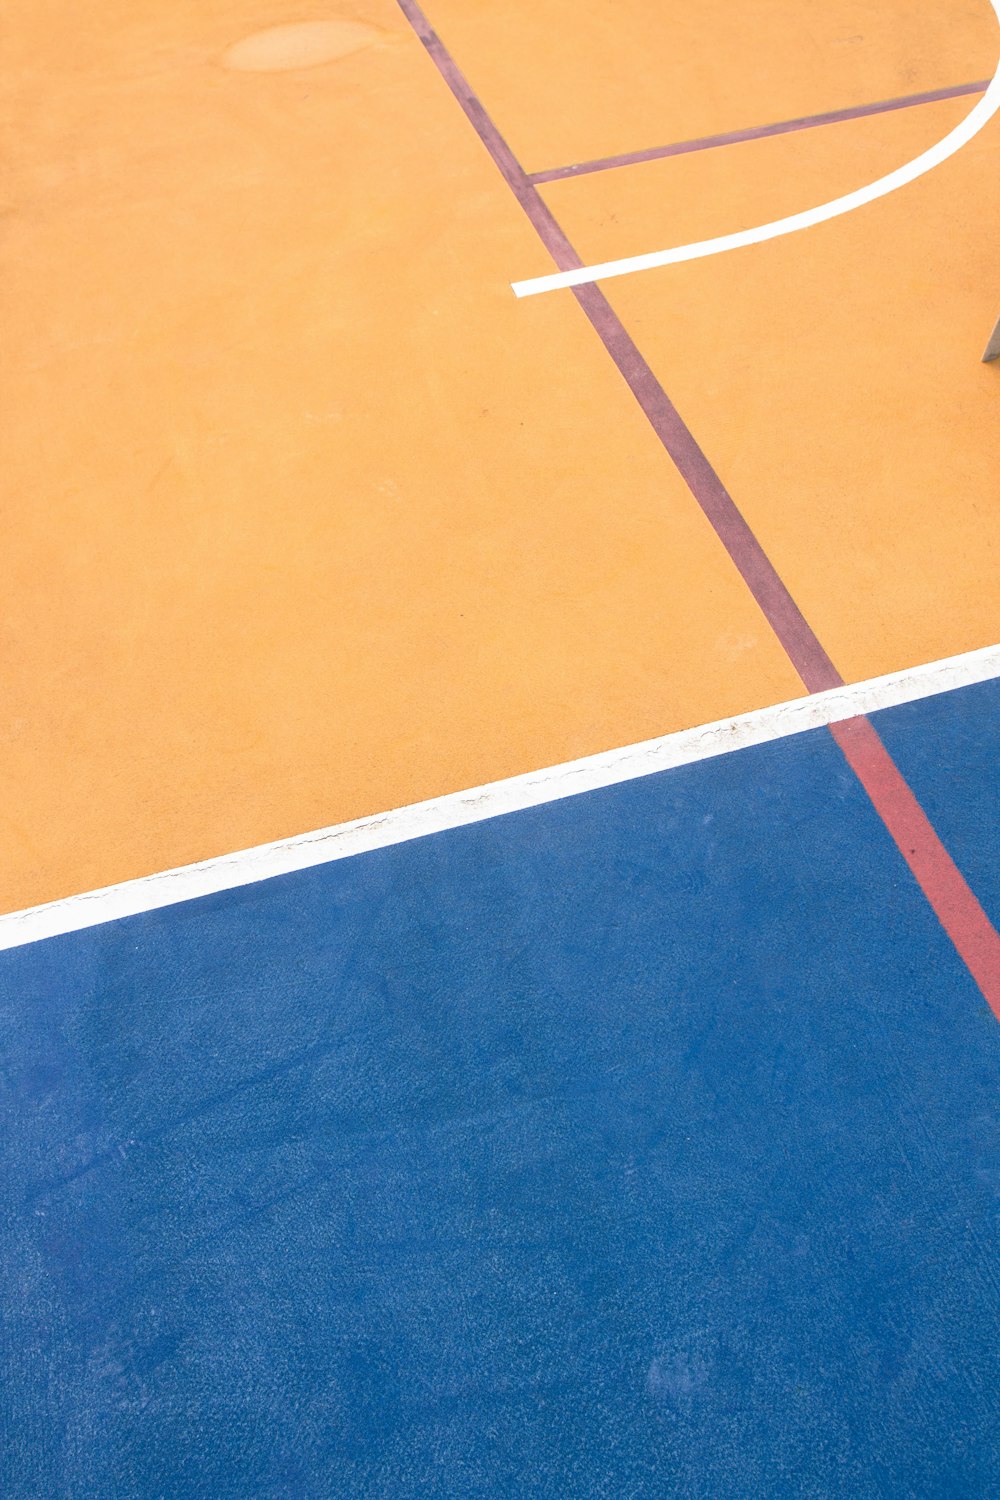 Un hombre parado en la parte superior de una cancha de baloncesto sosteniendo una raqueta